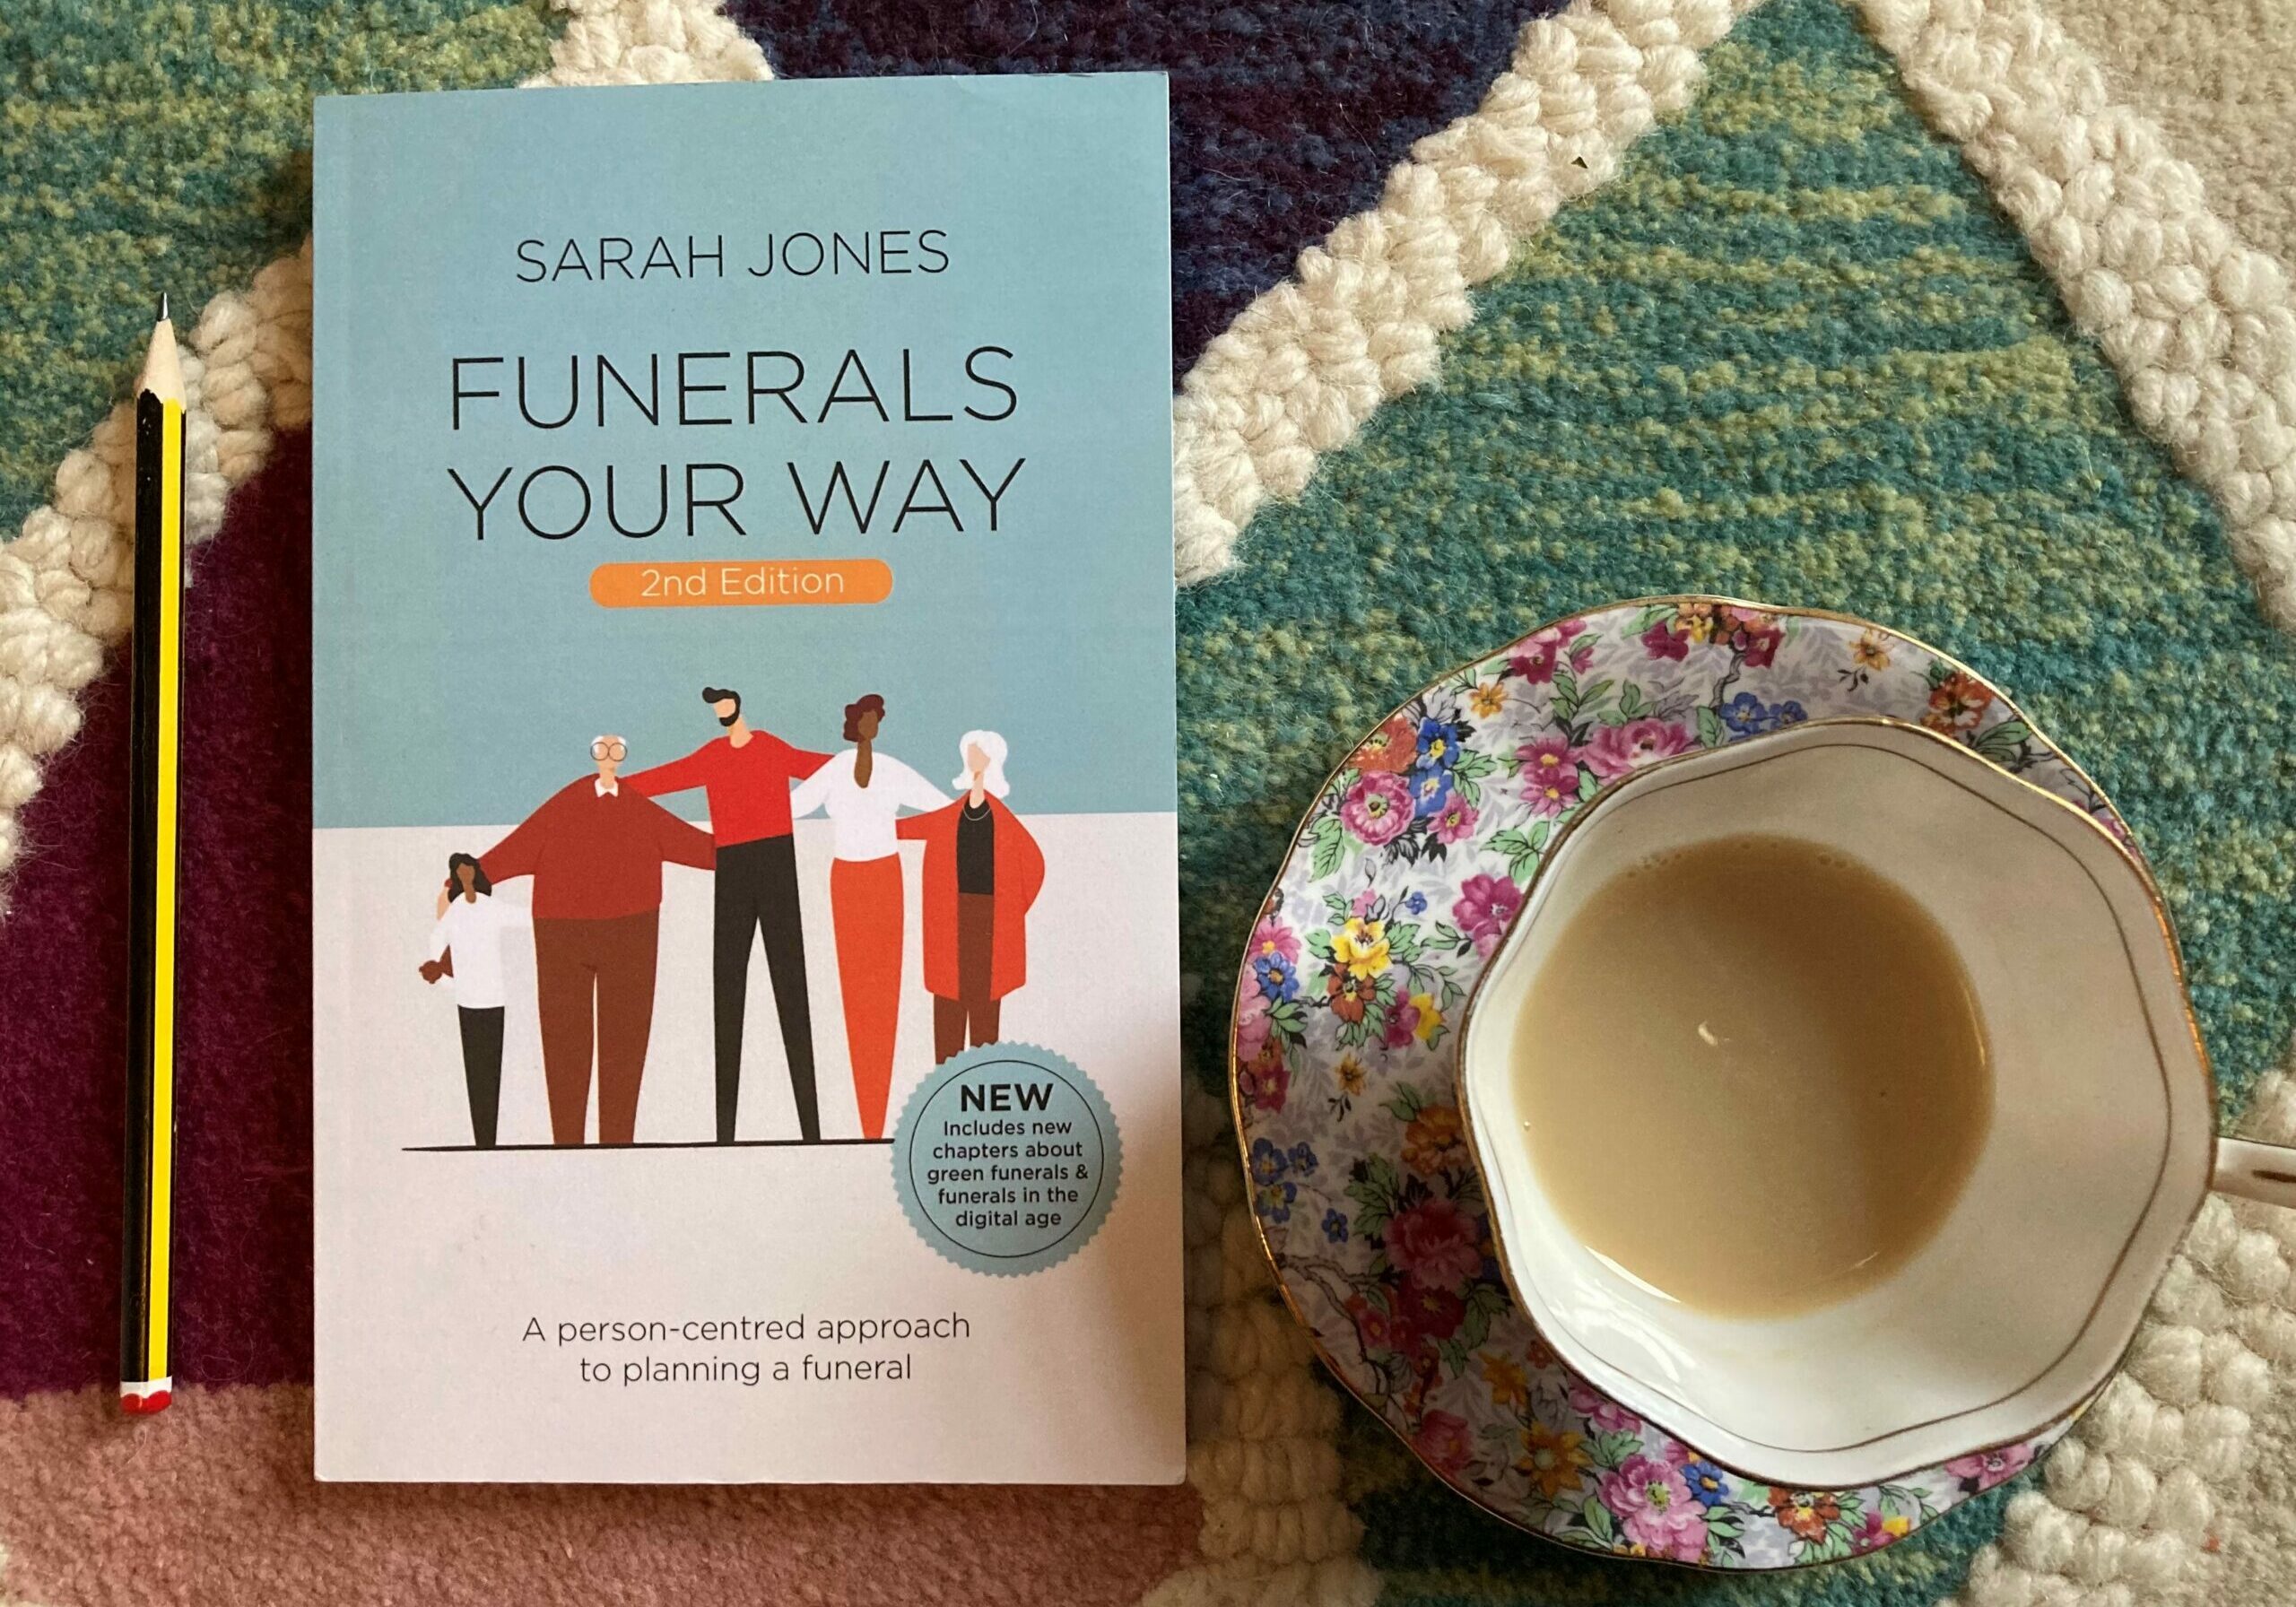 Pre-arranged funeral plans